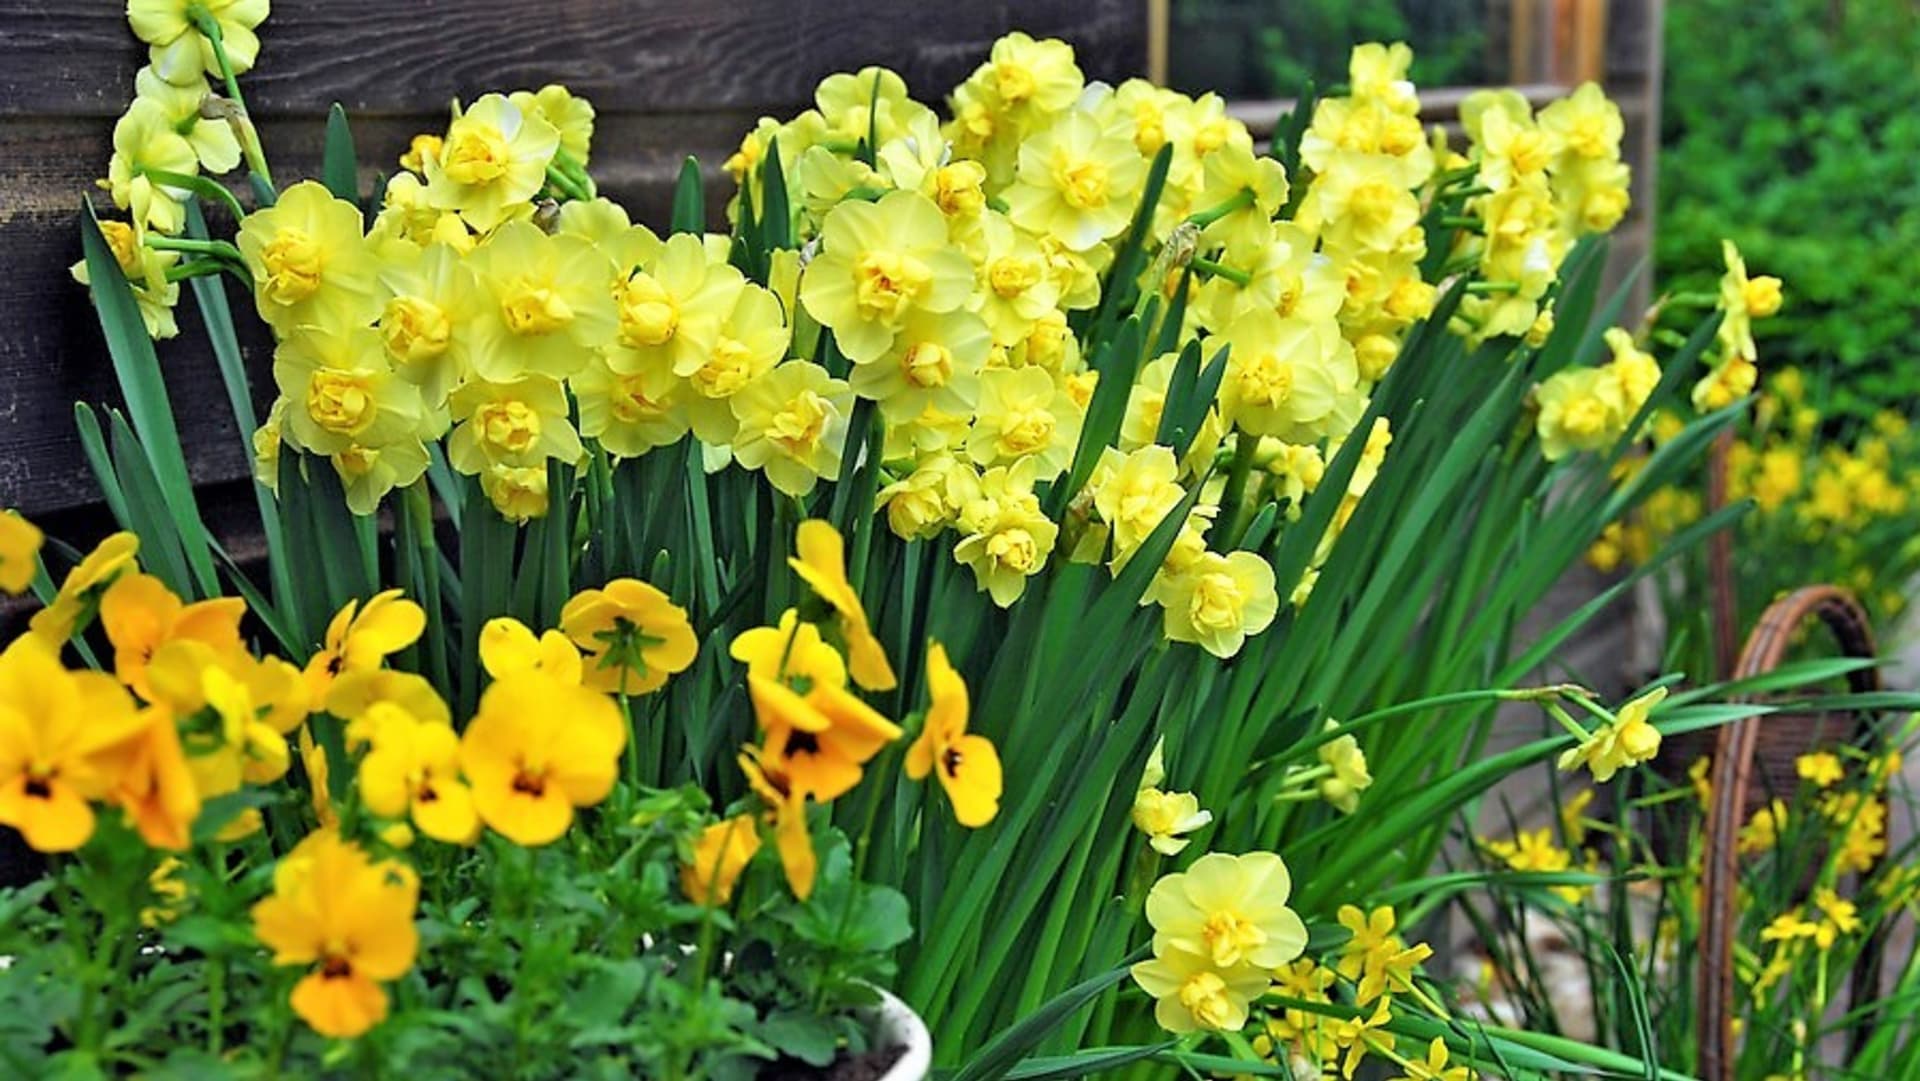 Kultivar Yellow Cheerfulness: sladce vonící klutivar, který září žlutými květy, které jsou ve středu lemované oranžově,  kvete od března do dubna a dorůstá do výšky 40 cm, vhodný k rychlení.